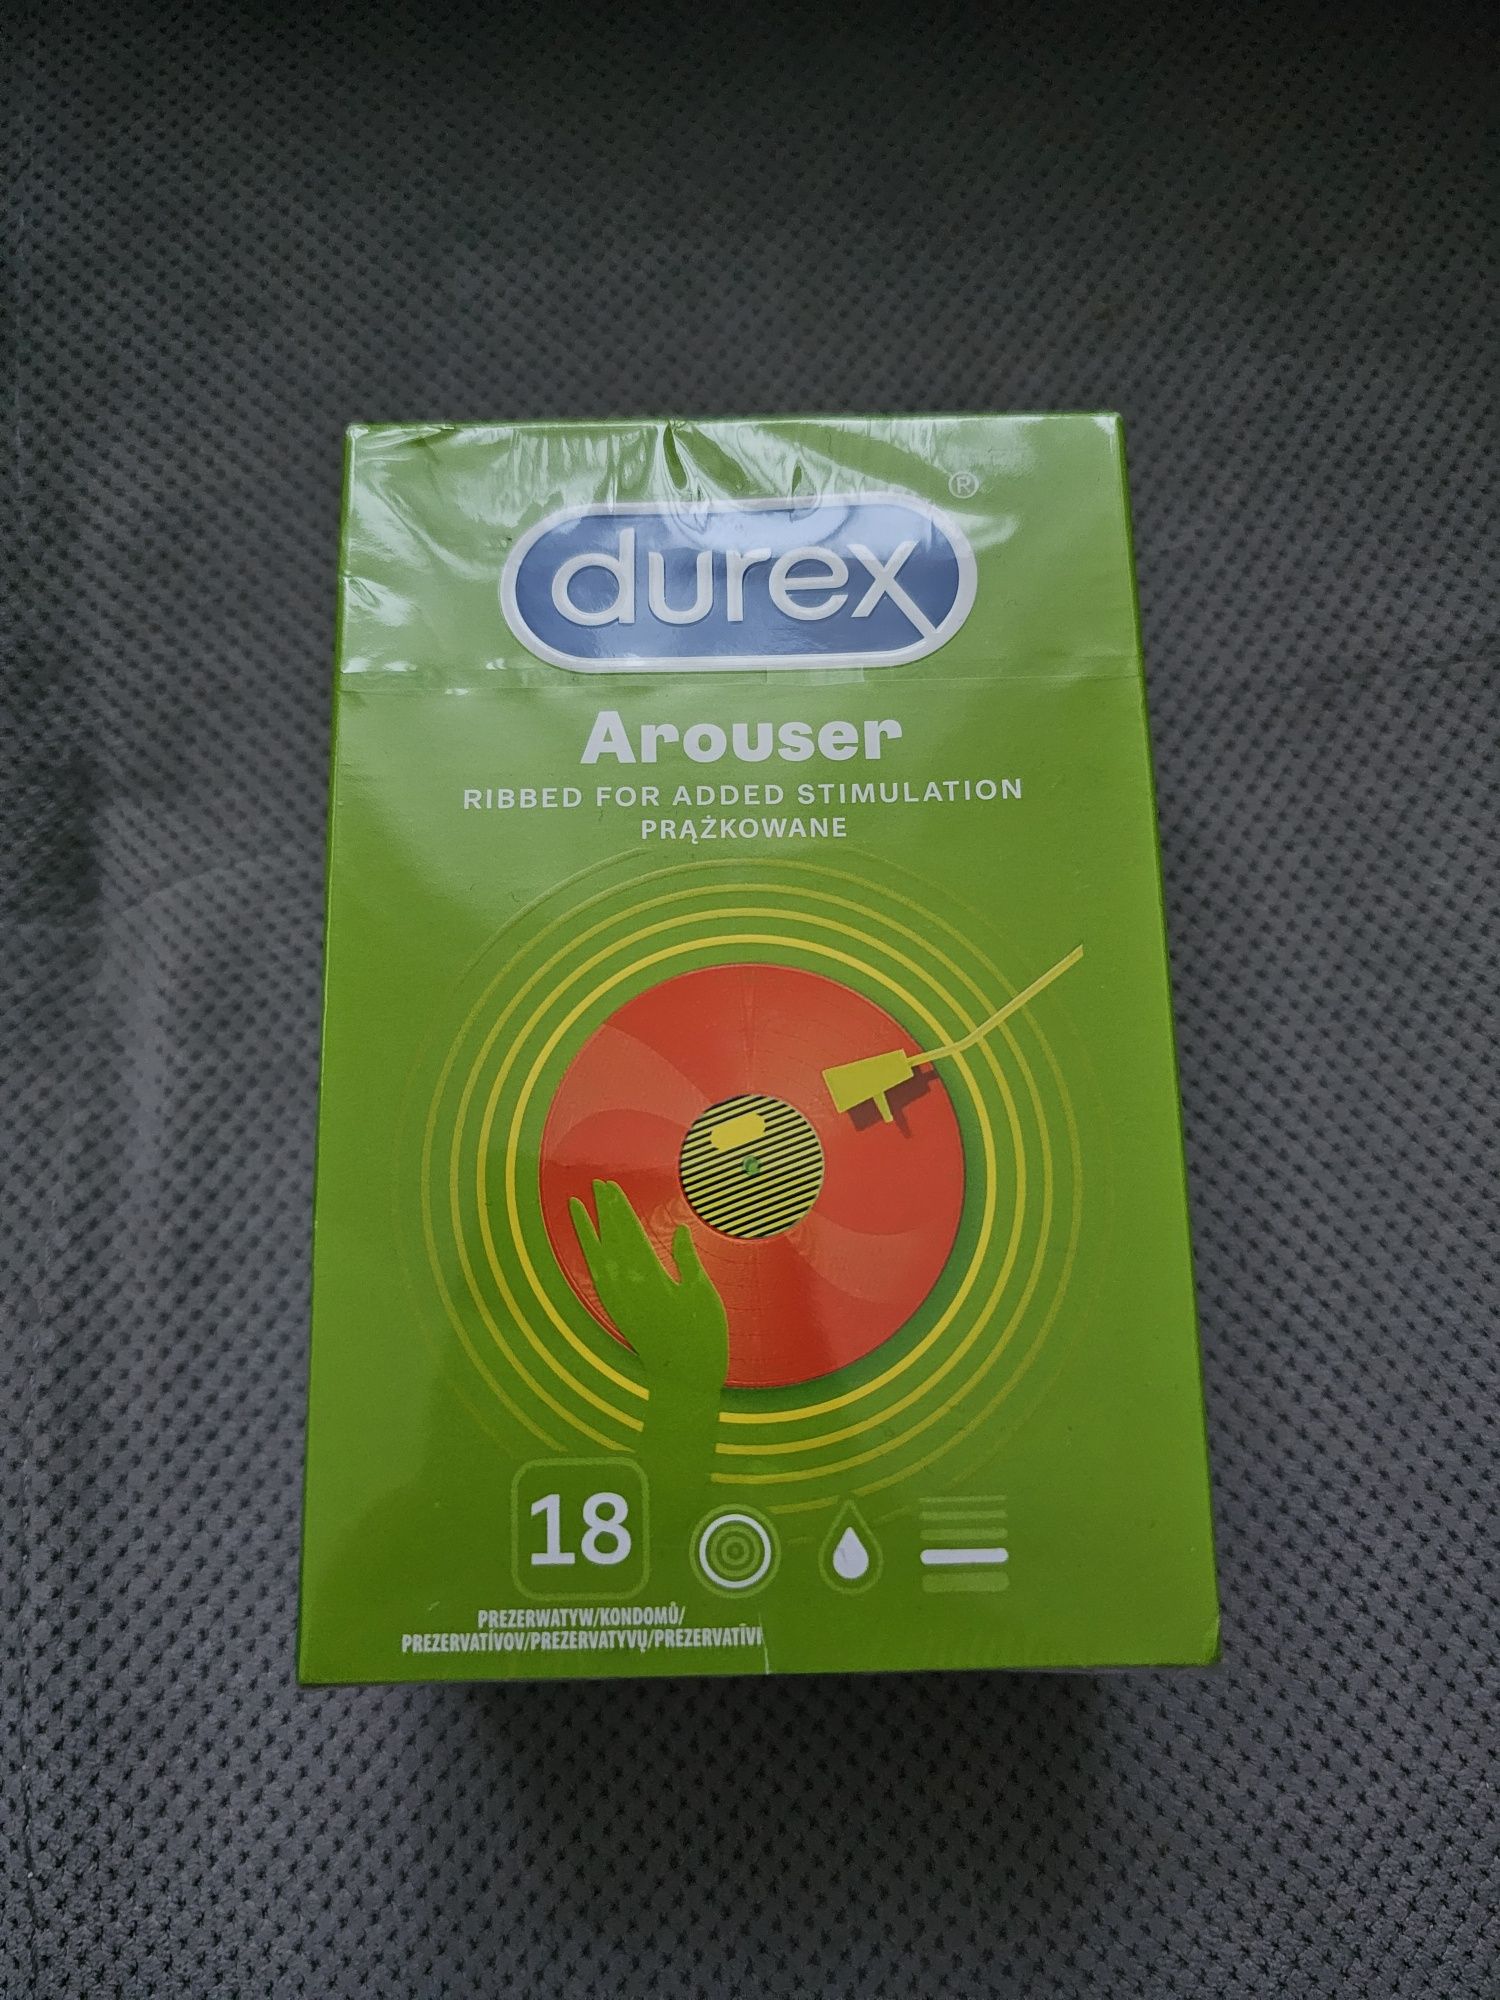 DUREX Arouser prezerwatywy, antykoncepcja opakowanie 18 sztuk / NOWE